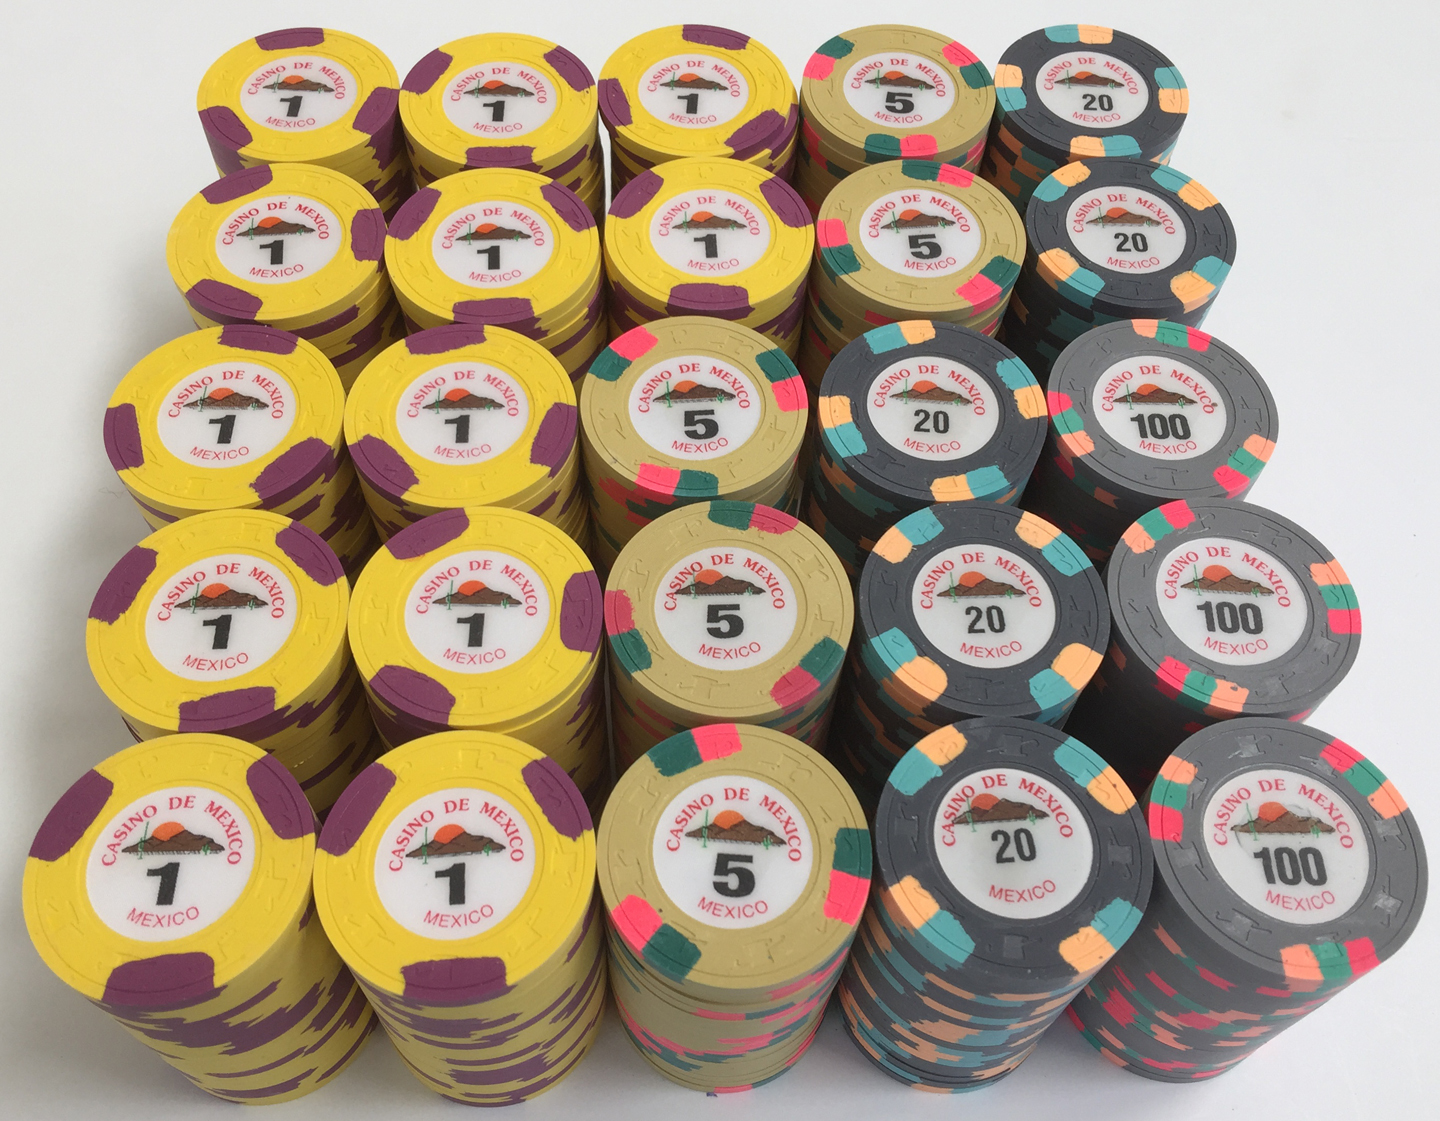 300 Casino De Mexico Paulson Poker Chips - Apache Poker Chips